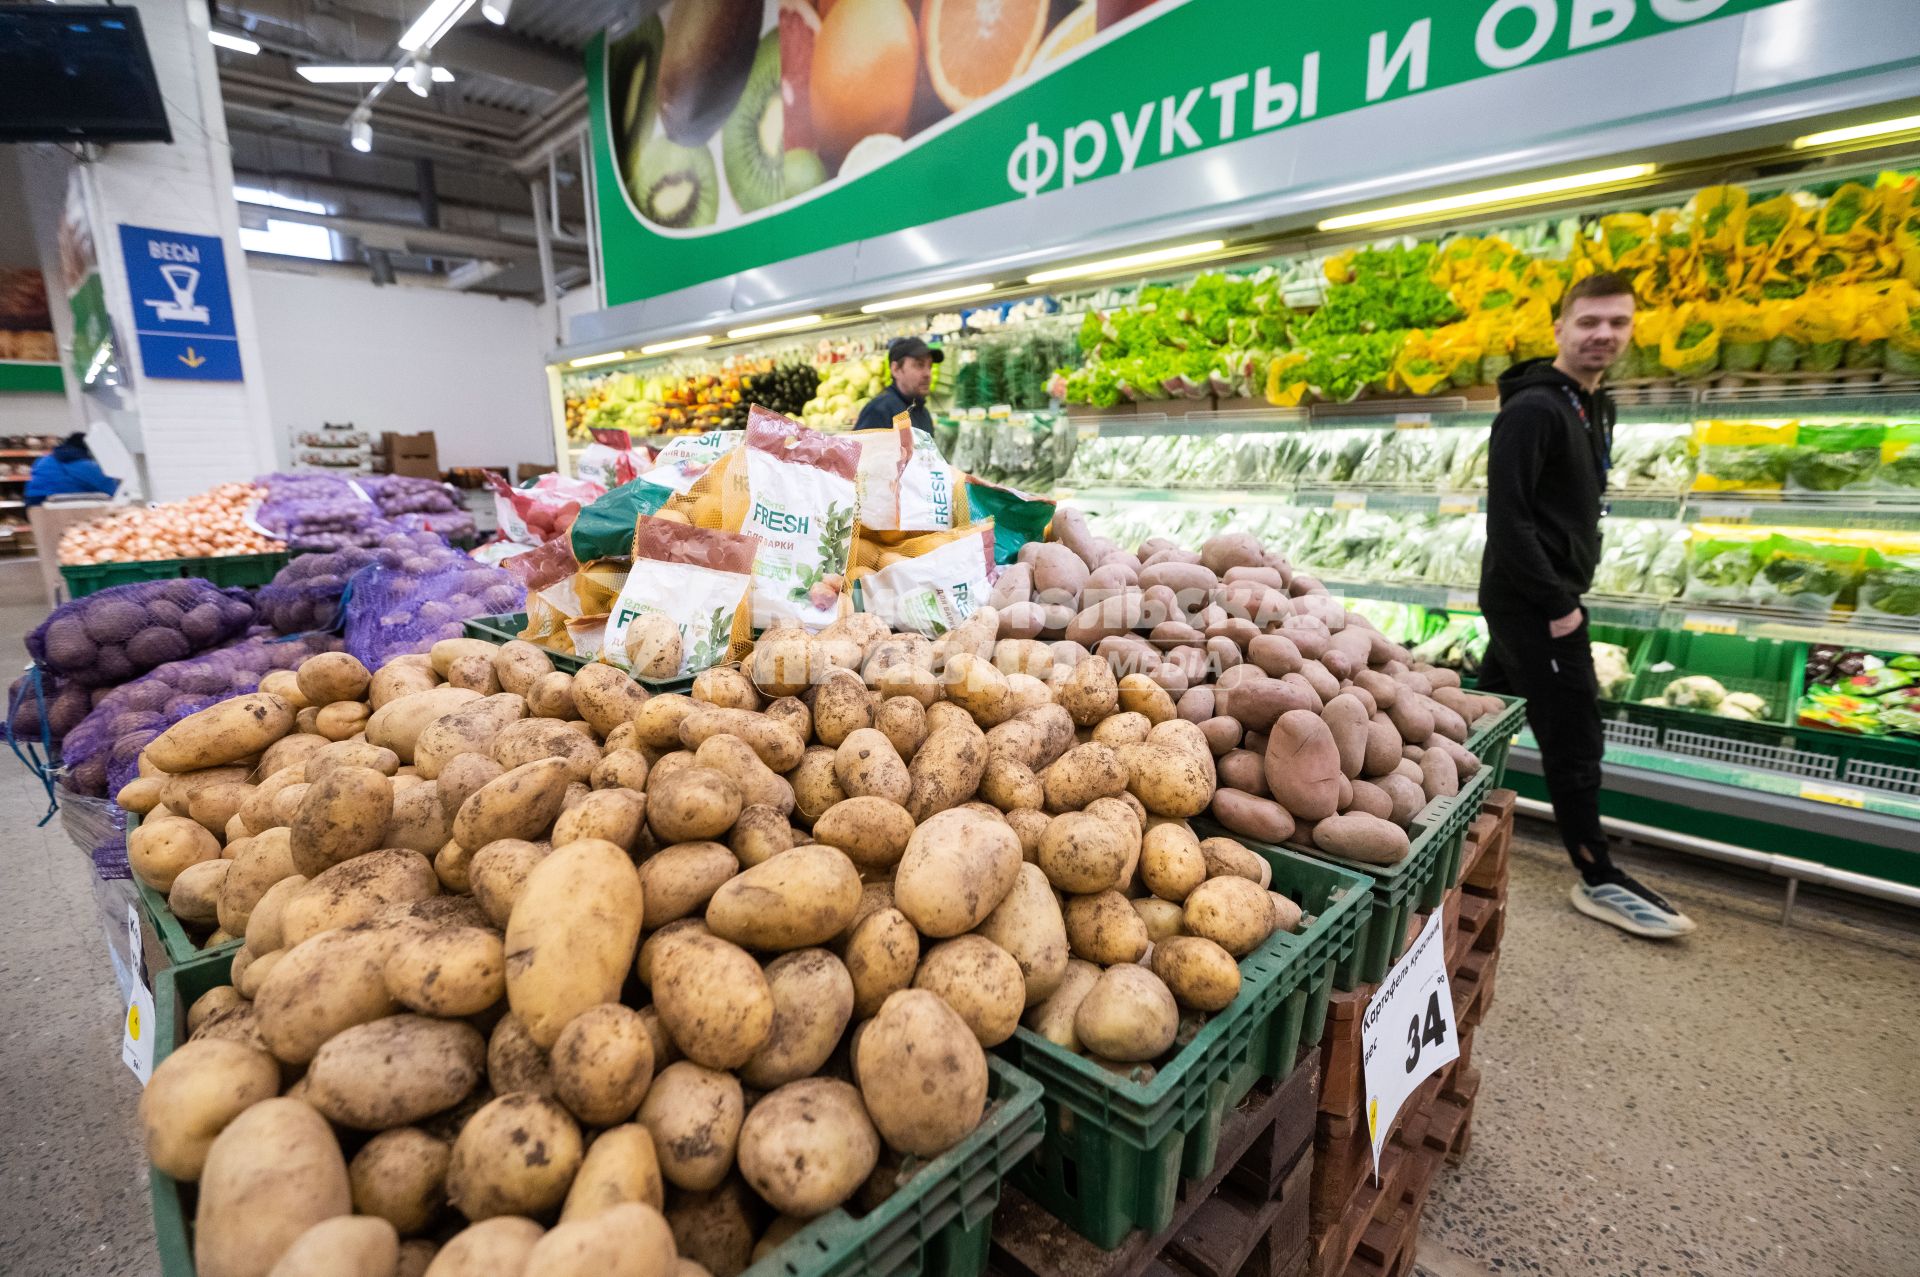 Санкт-Петербург. Овощной отдел в супермаркете.